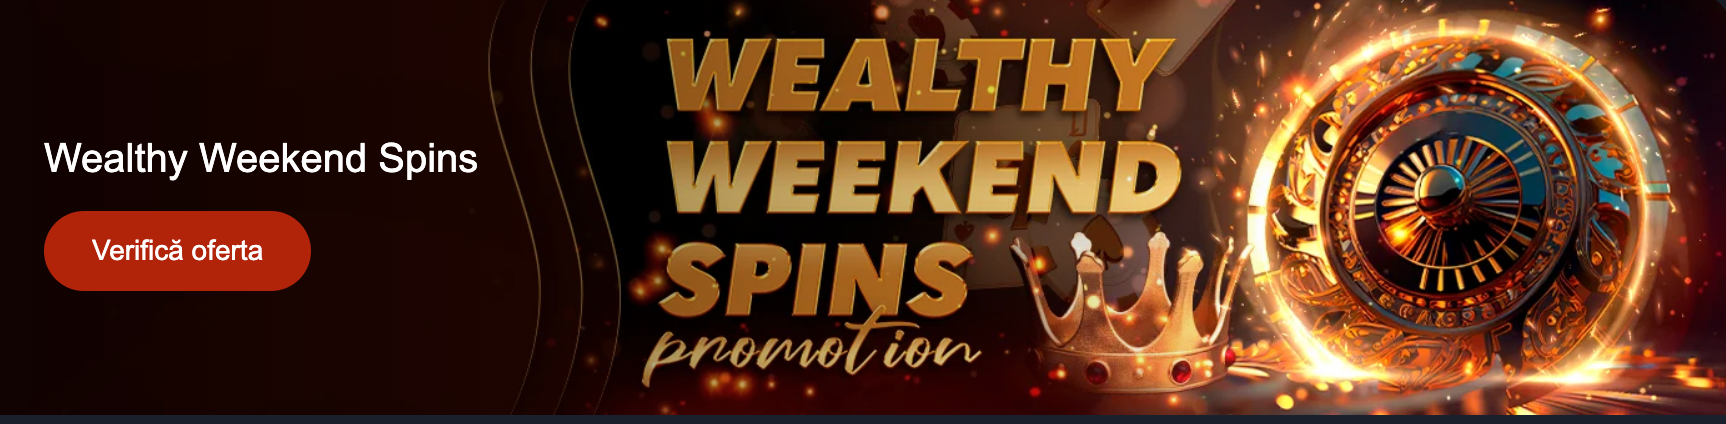 Wealthy Weekend Spins